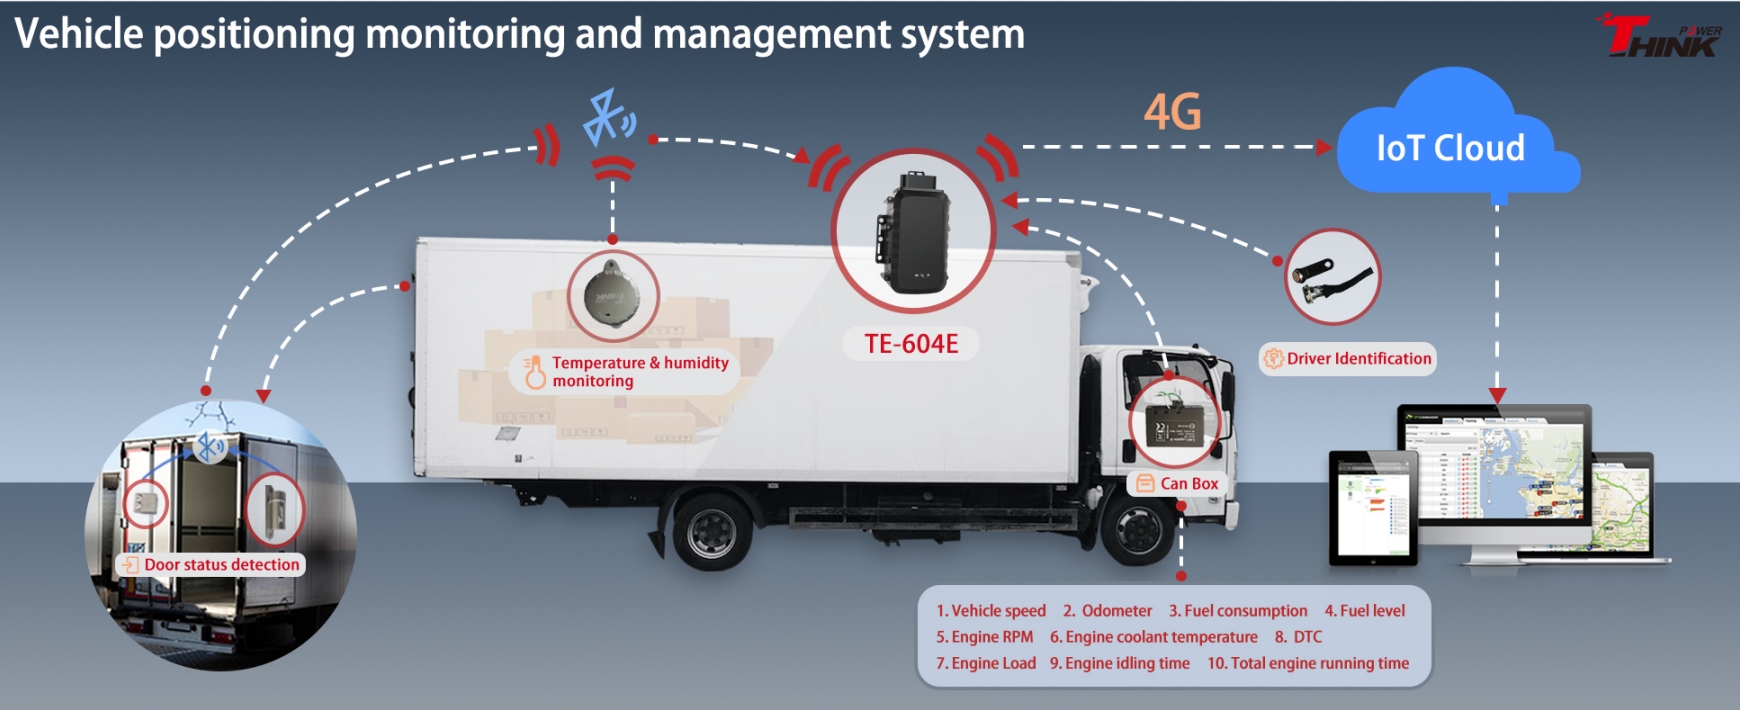 TL-604E: The Future of Vehicle Tracking and Automotive Data Diagnostics